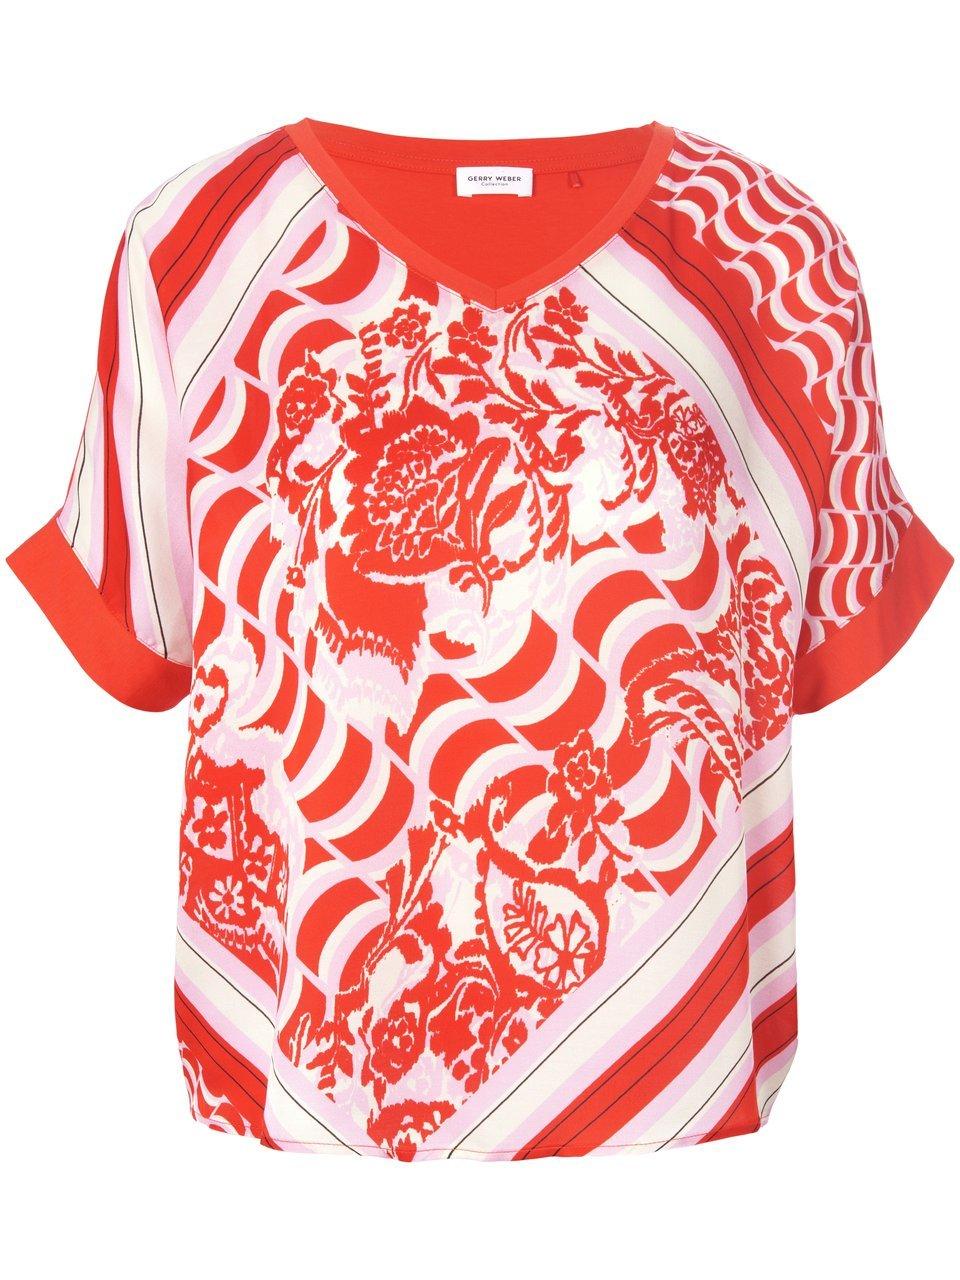 GERRY WEBER Dames Shirt met halflange mouwen Lila/Pink/Rot/Orange Druck-40